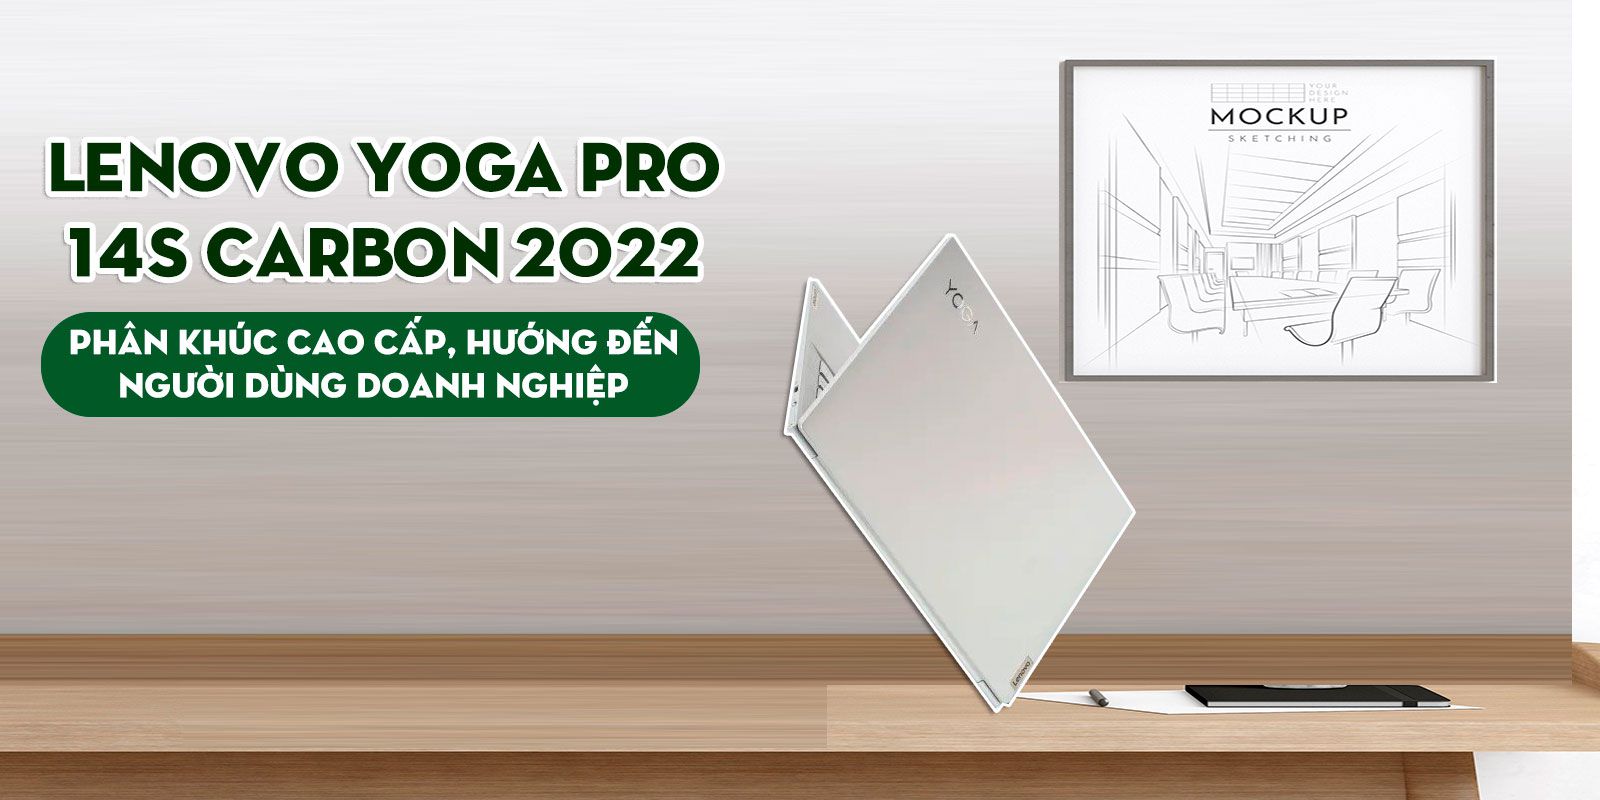 lenovo-yoga-pro-14s-carbon-2022-phan-khuc-cao-cap-huong-den-nguoi-dung-doanh-nghiep%203.jpg